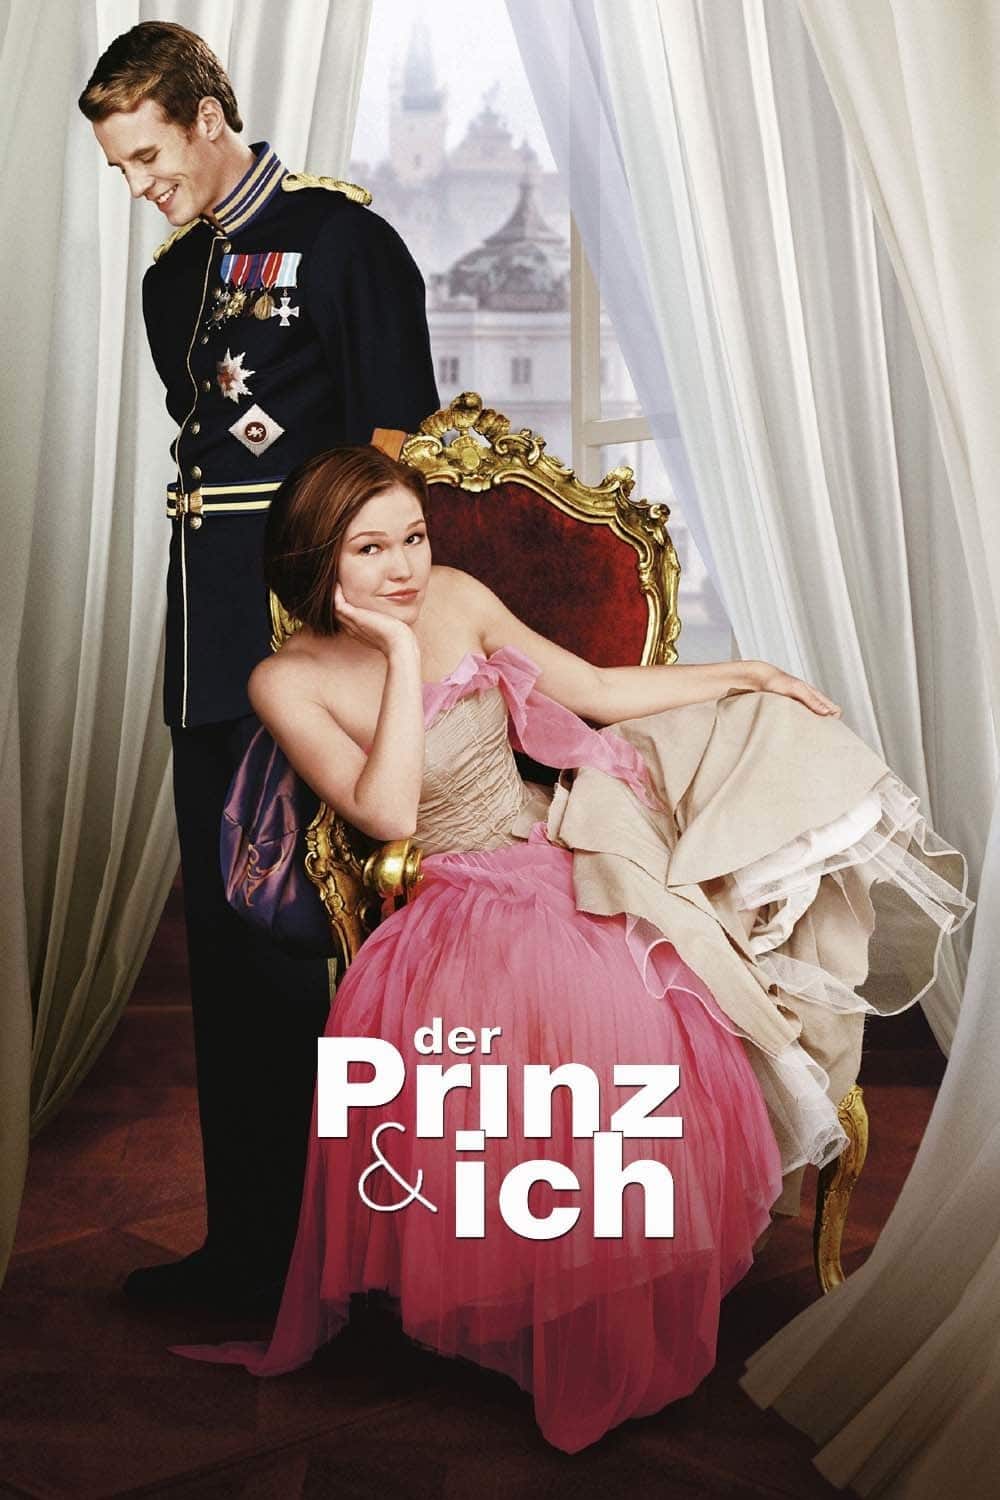 Plakat von "Der Prinz & Ich"